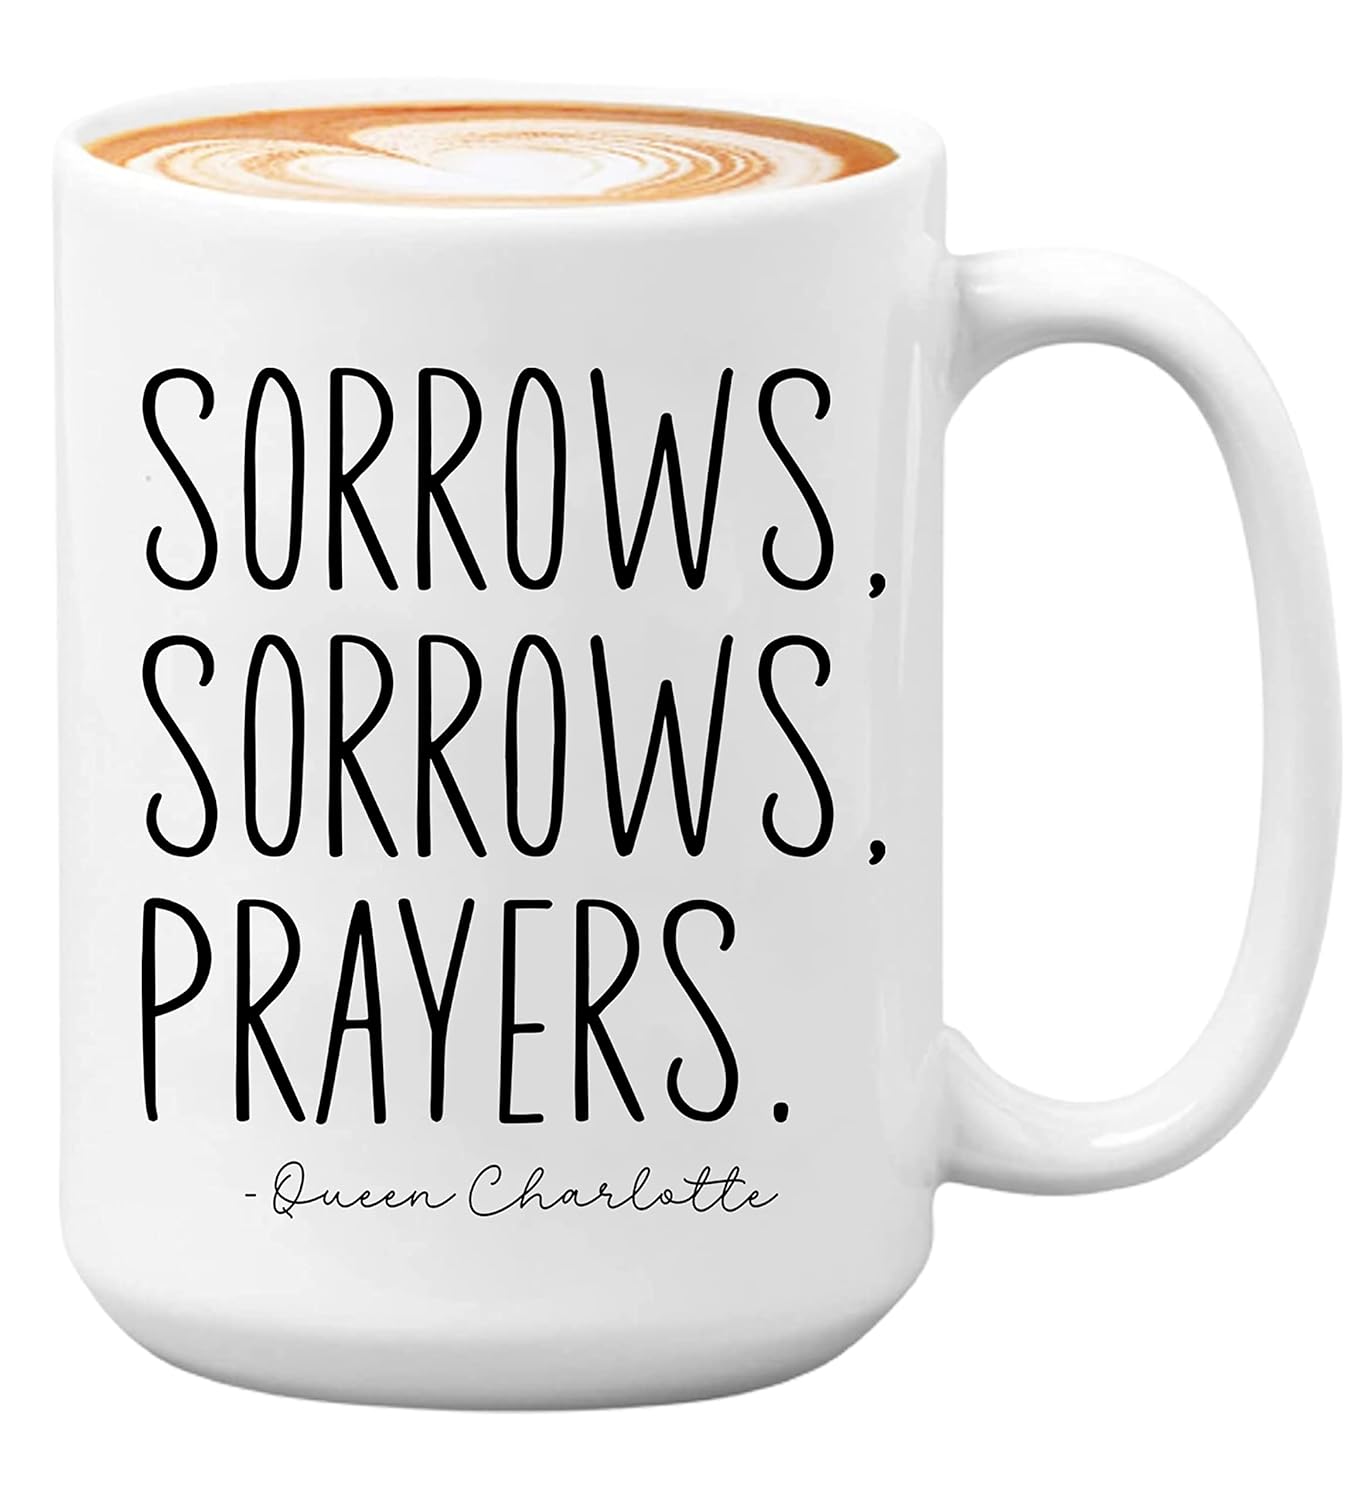 Sorrows, Sorrows, Prayers Mug, Sorrows and Prayers Mug, Quote Mug, Sorrows Sorrows Prayers Mug 11oz, Mug 15oz, Mug Coffee